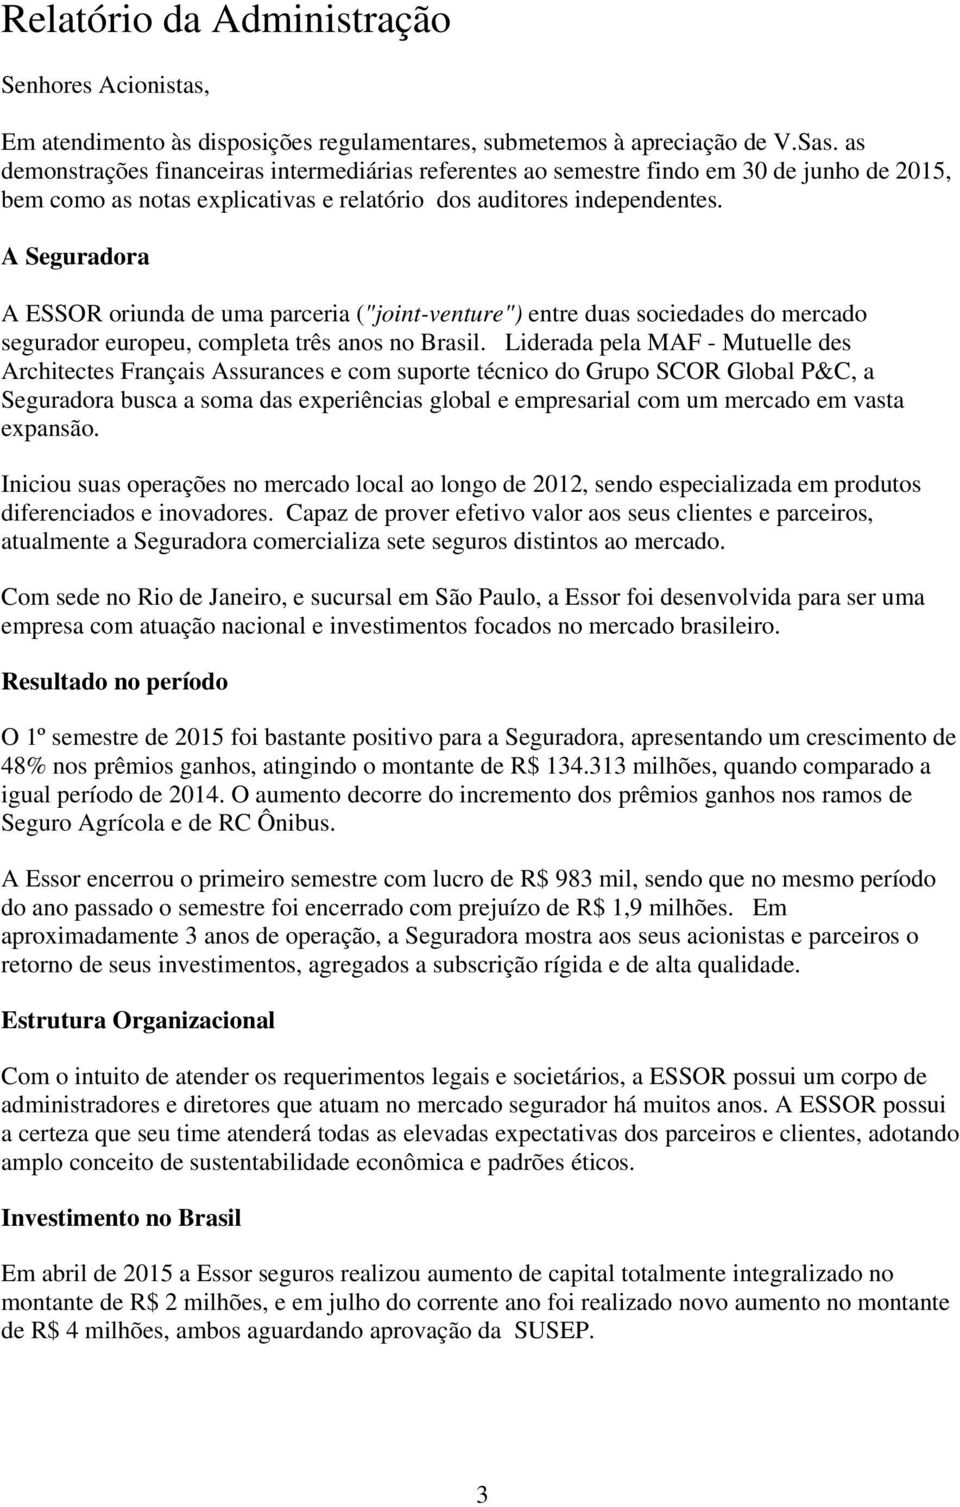 A Seguradora A ESSOR oriunda de uma parceria ("joint-venture") entre duas sociedades do mercado segurador europeu, completa três anos no Brasil.